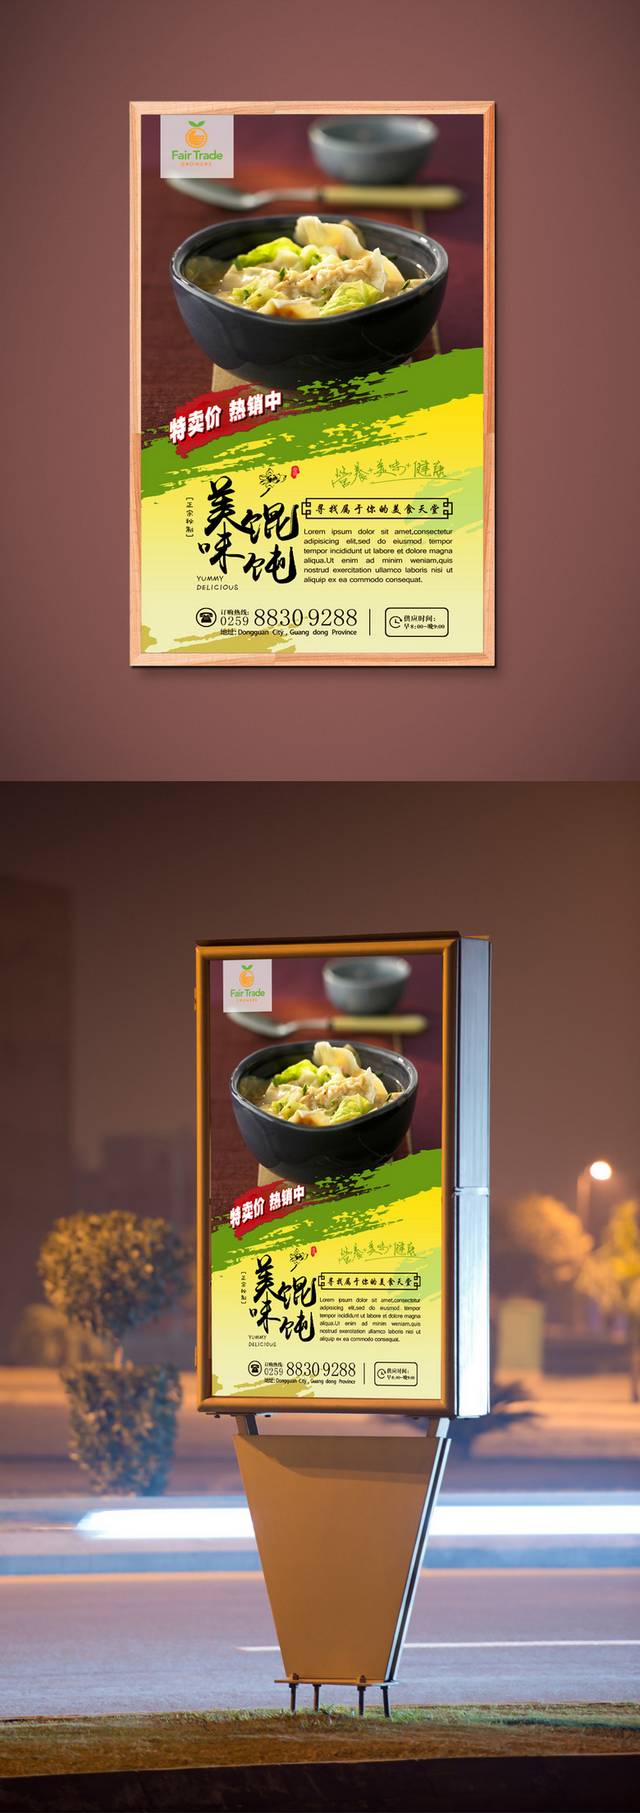 美食店煲仔饭美食促销海报